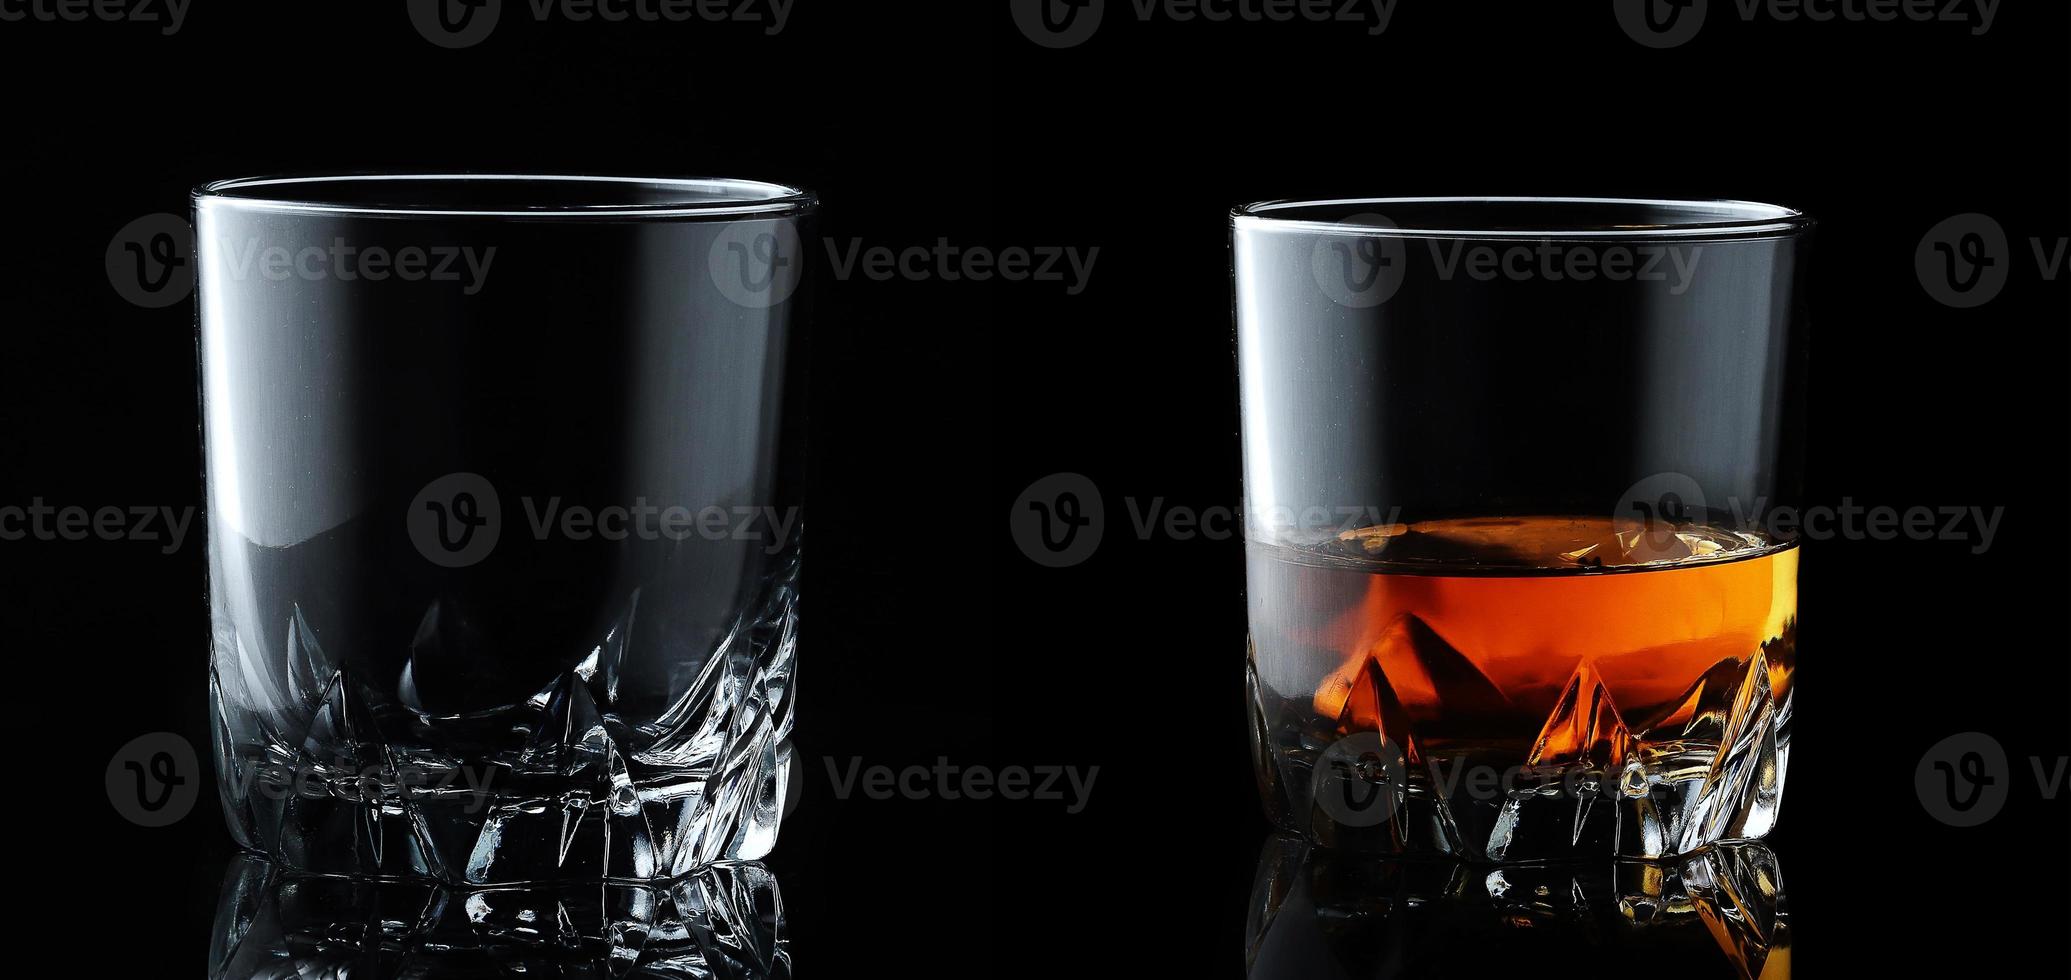 ensemble de boissons alcoolisées. whisky écossais dans un verre élégant sur fond noir. photo